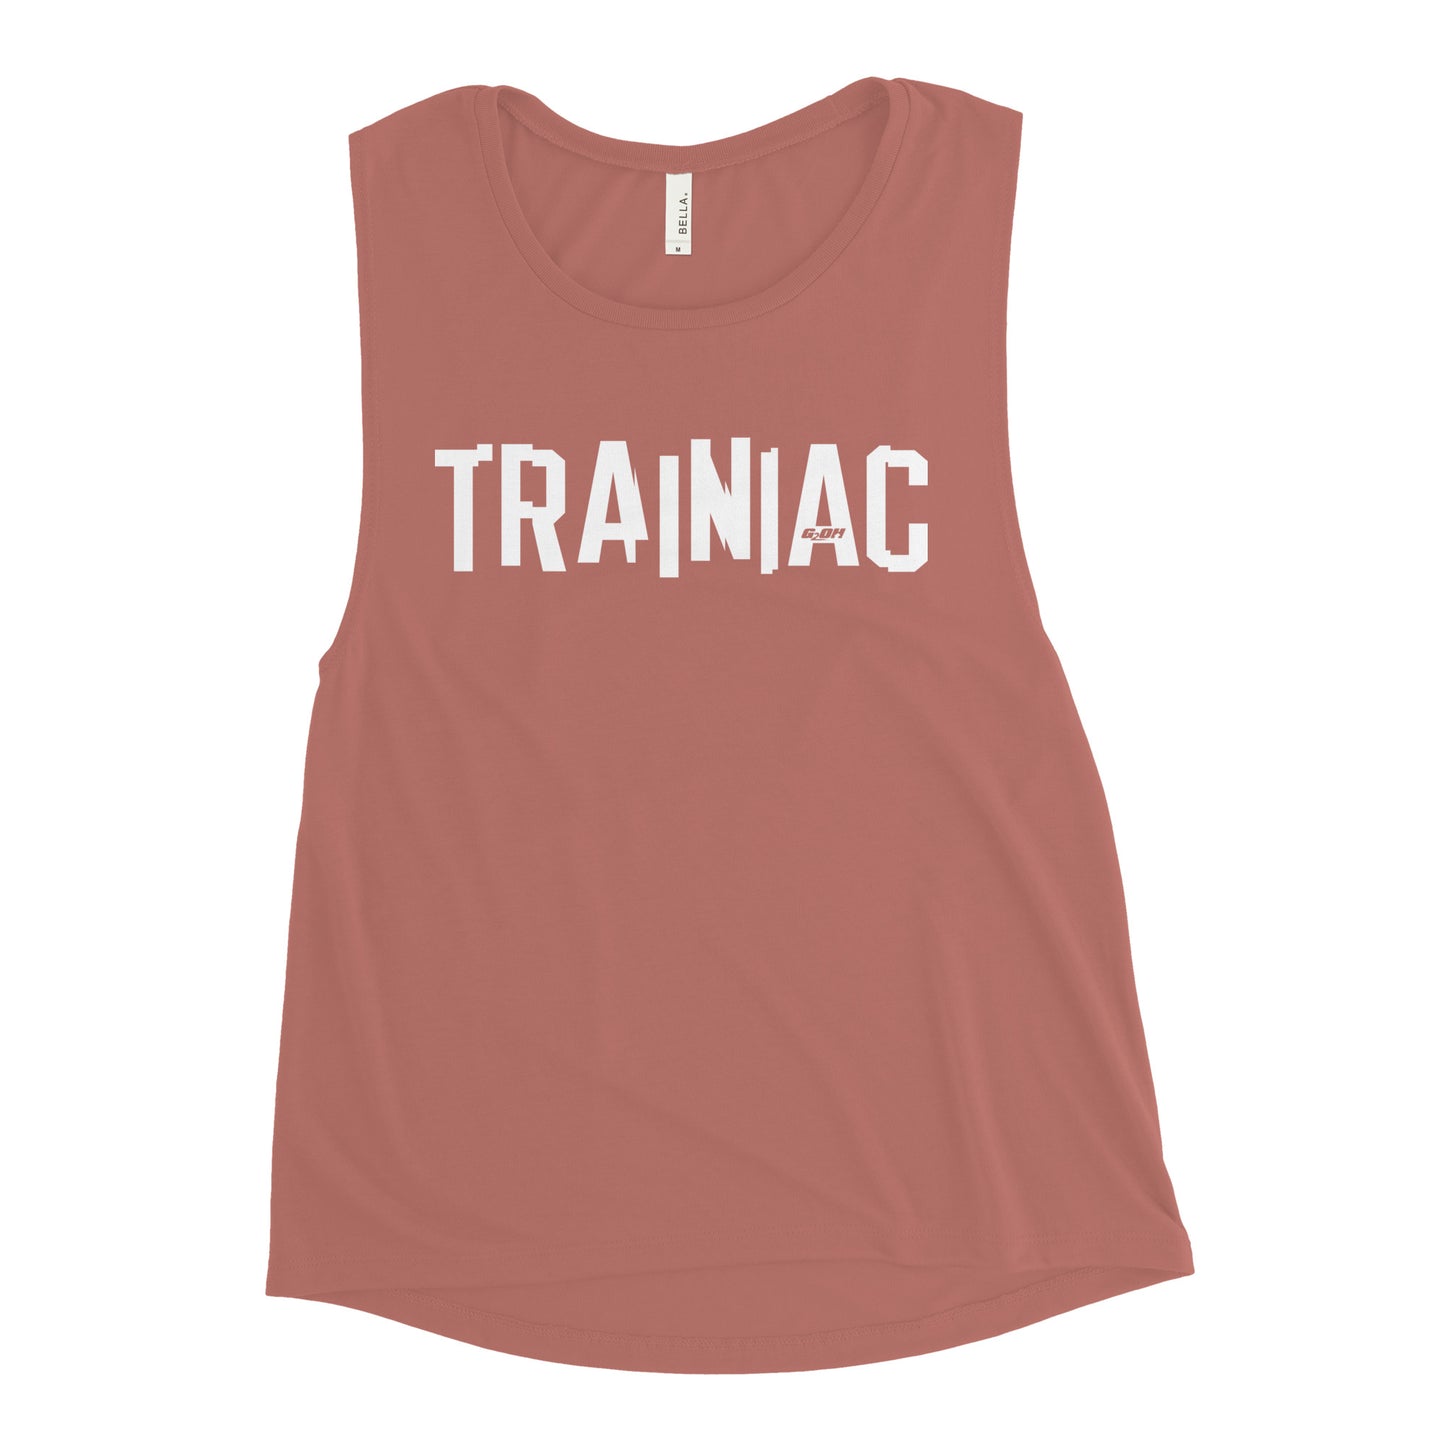 Trainiac Women's Muscle Tank